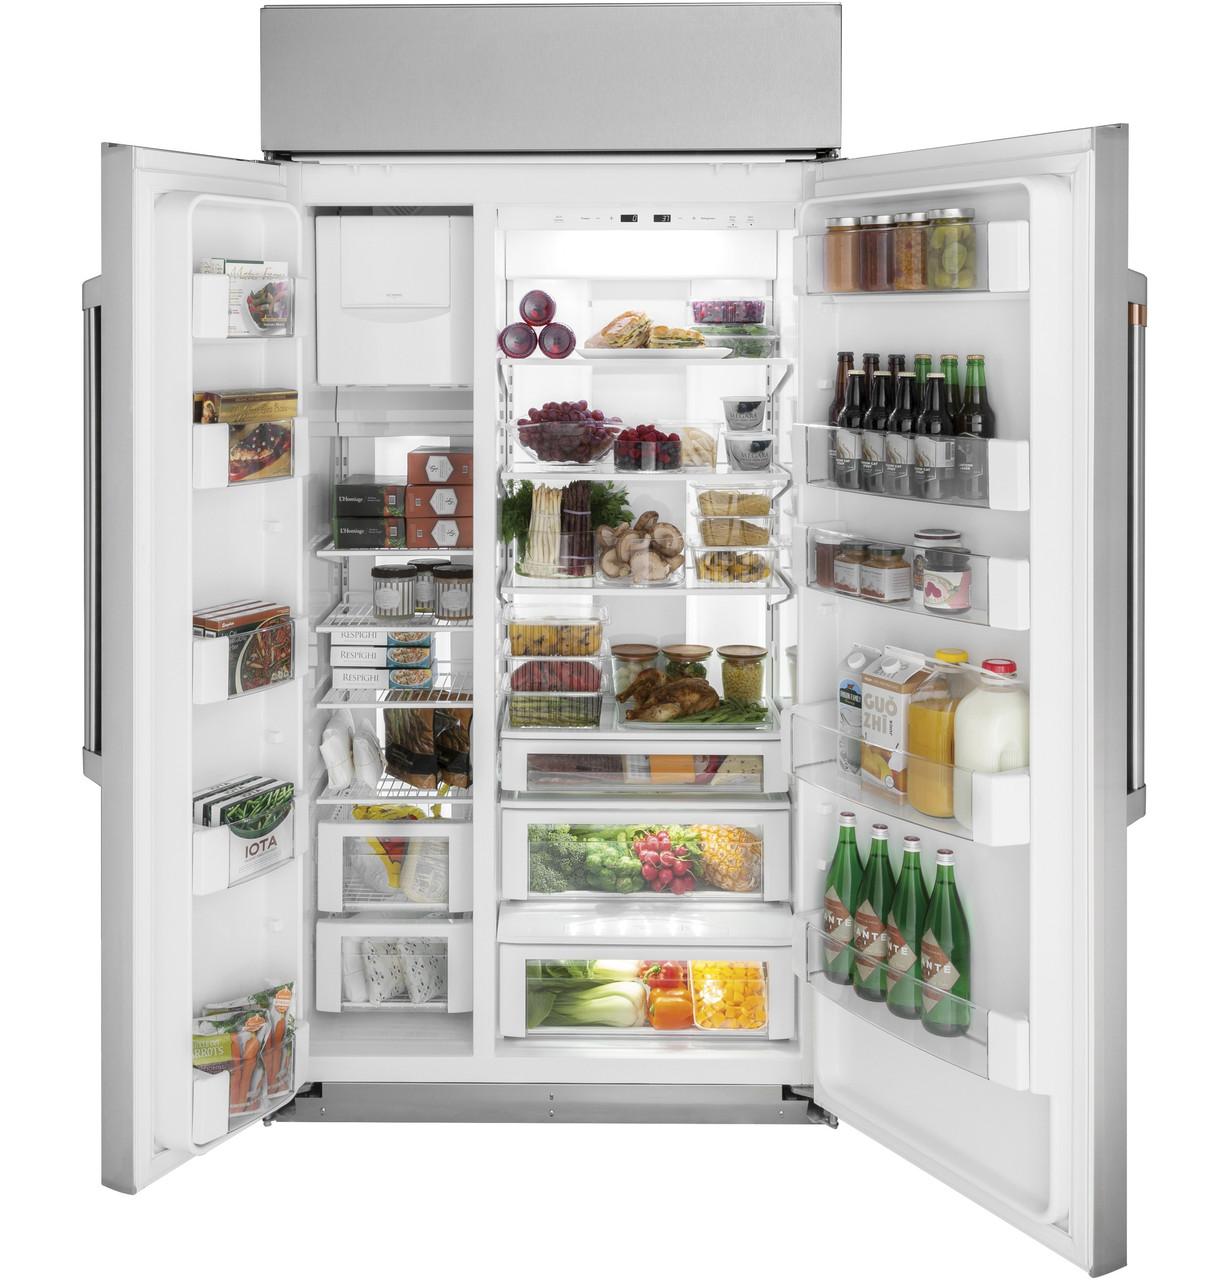 Cafe Caf(eback)™ 42" Smart Built-In Side-by-Side Refrigerator